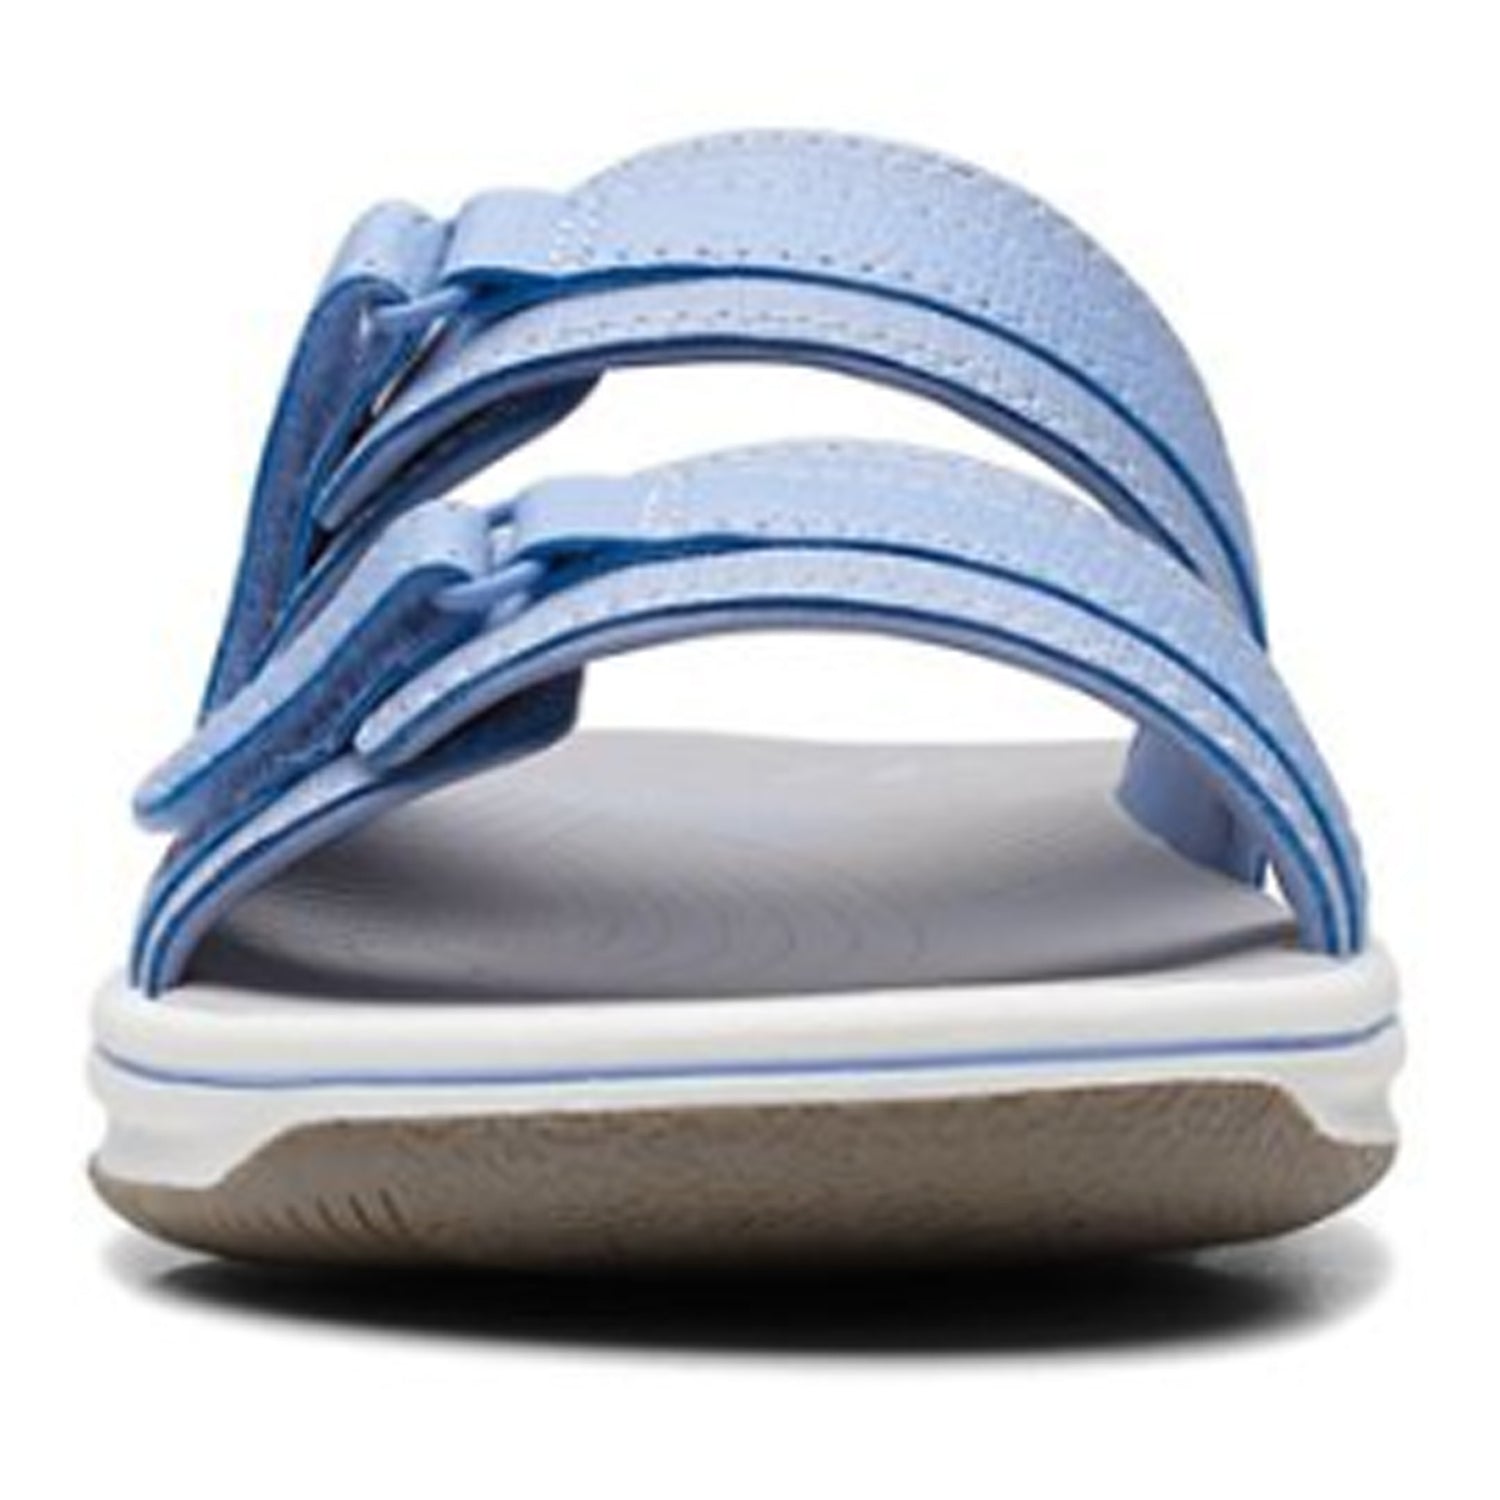 Peltz Shoes  Women's Clarks Breeze Piper Sandal LAVENDER 26171354